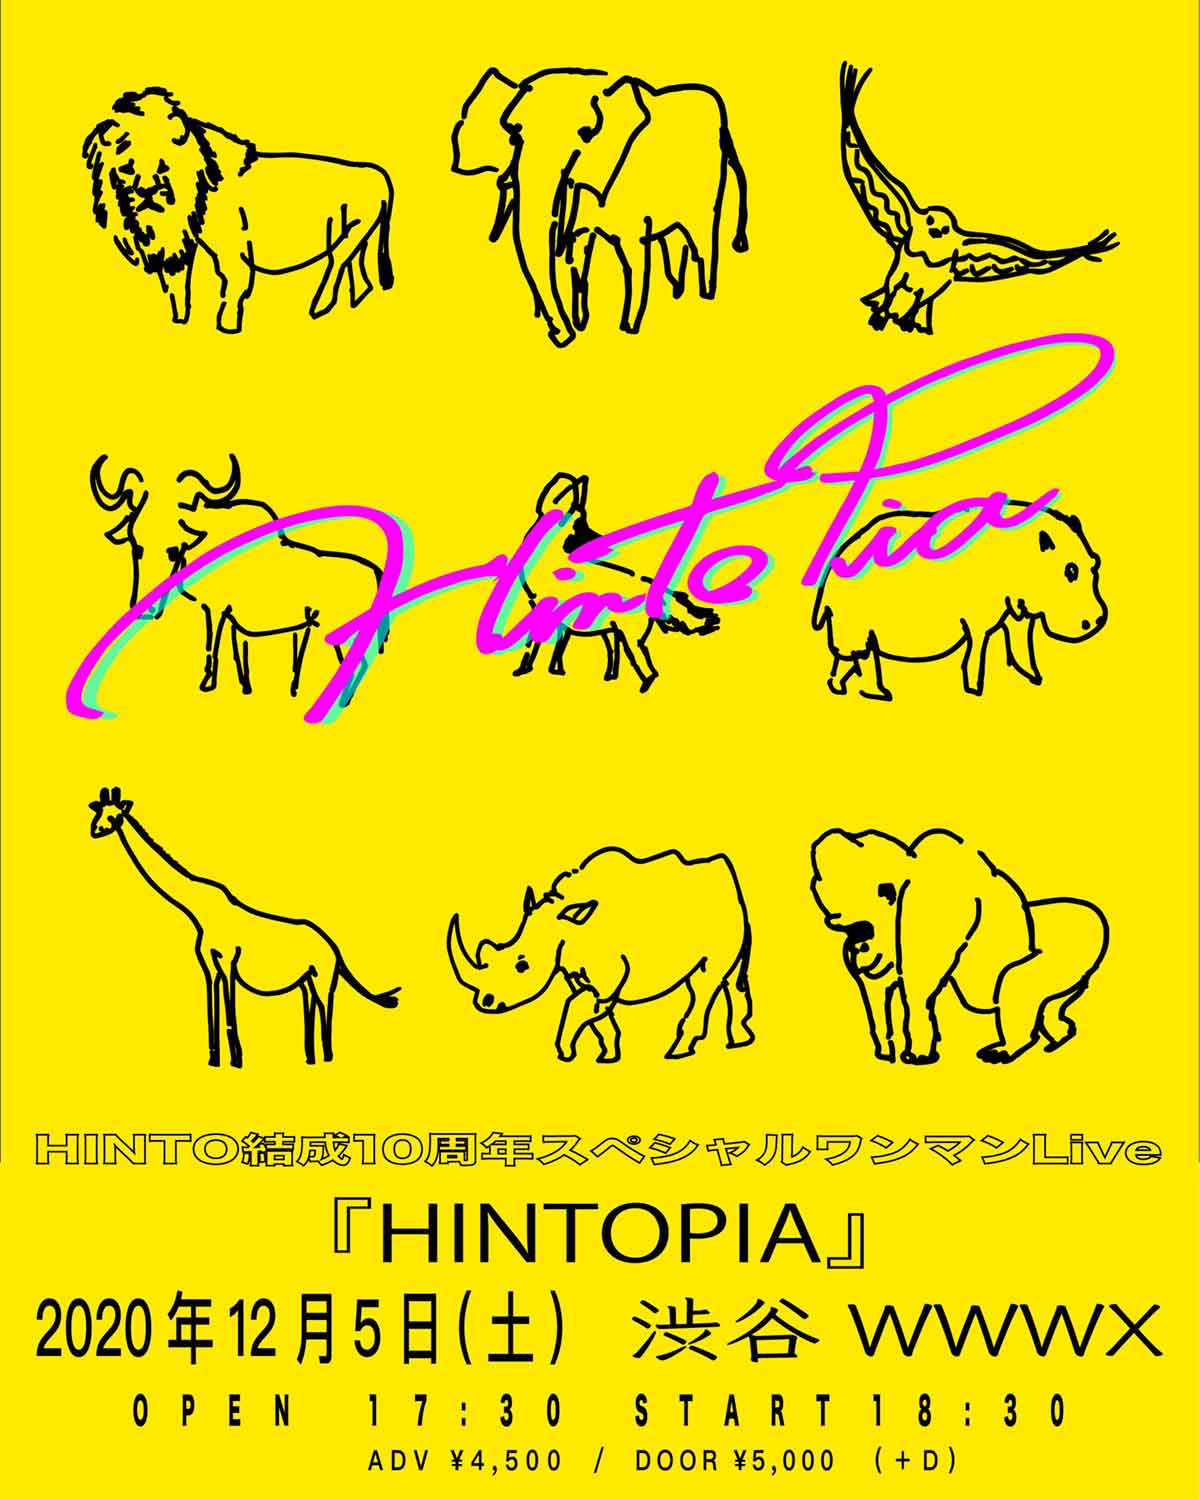 12/05(Sat) HINTO | SCHEDULE | Shibuya WWW - WWW X